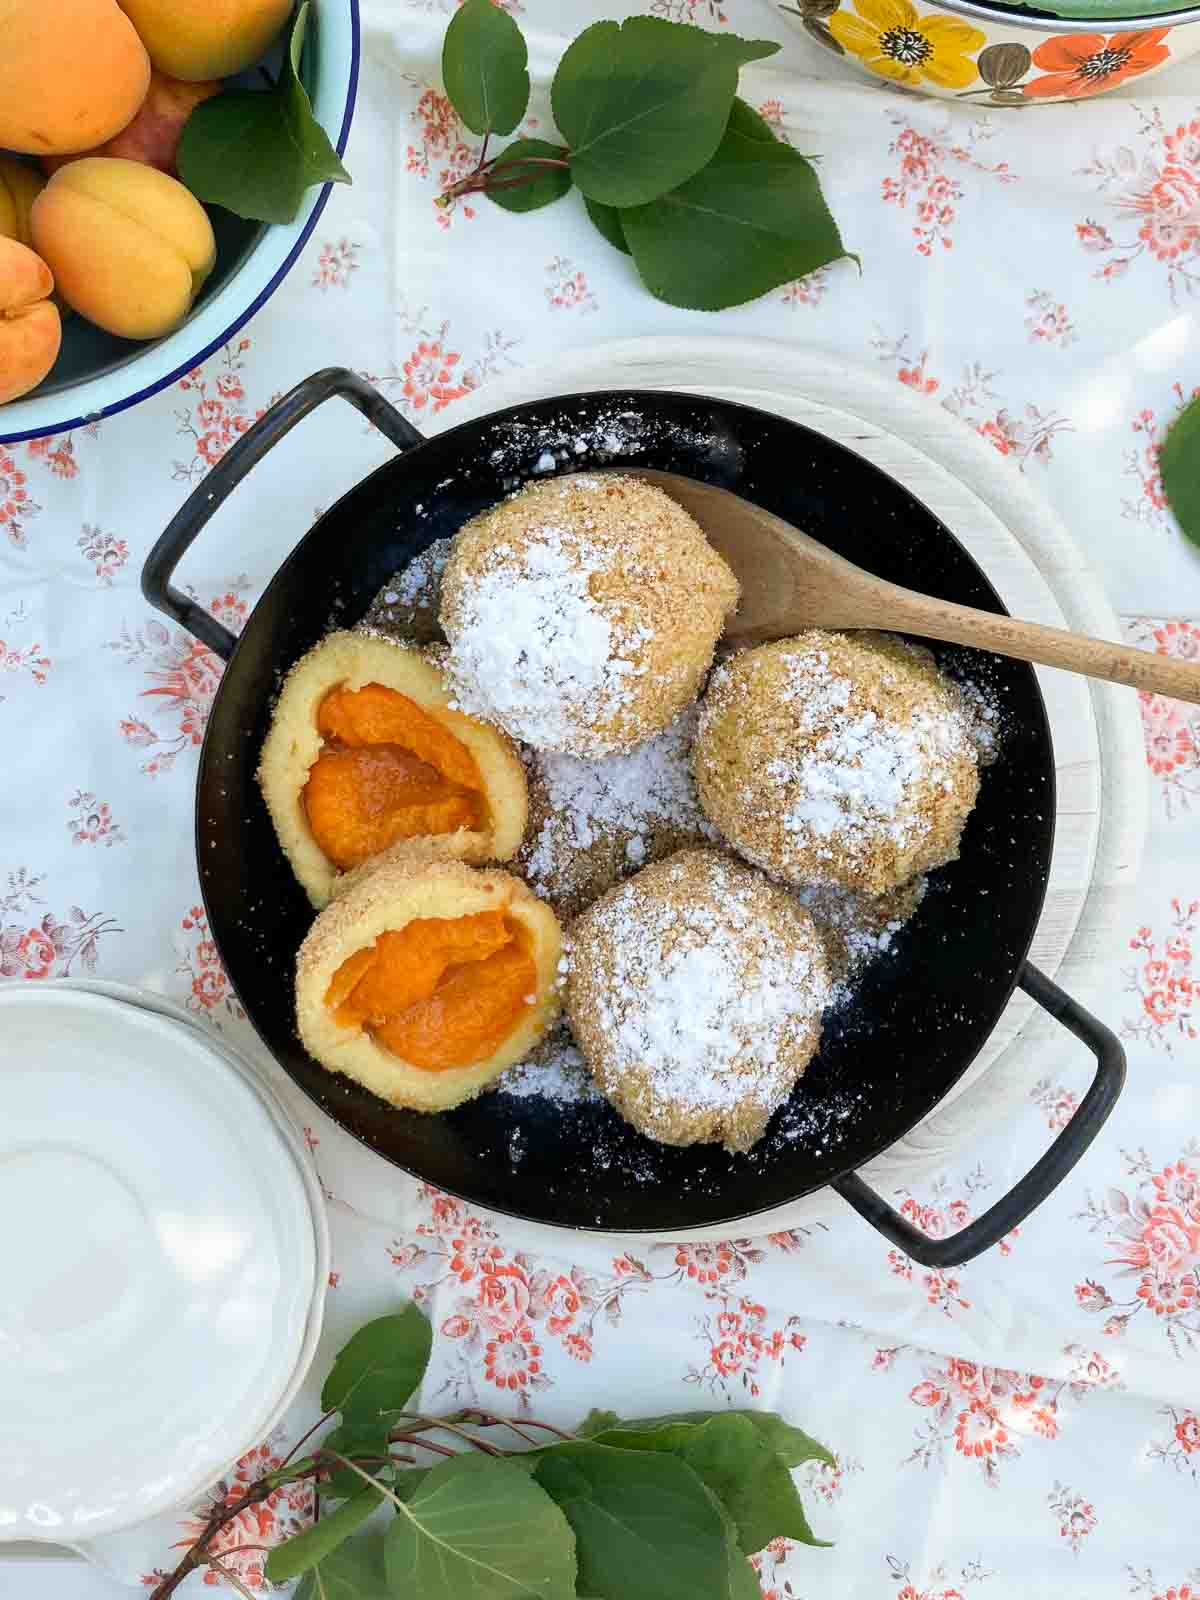 Marillenknödel aus Kartoffelteig angerichtet in gusseiserner Pfanne | Apricot dumplings